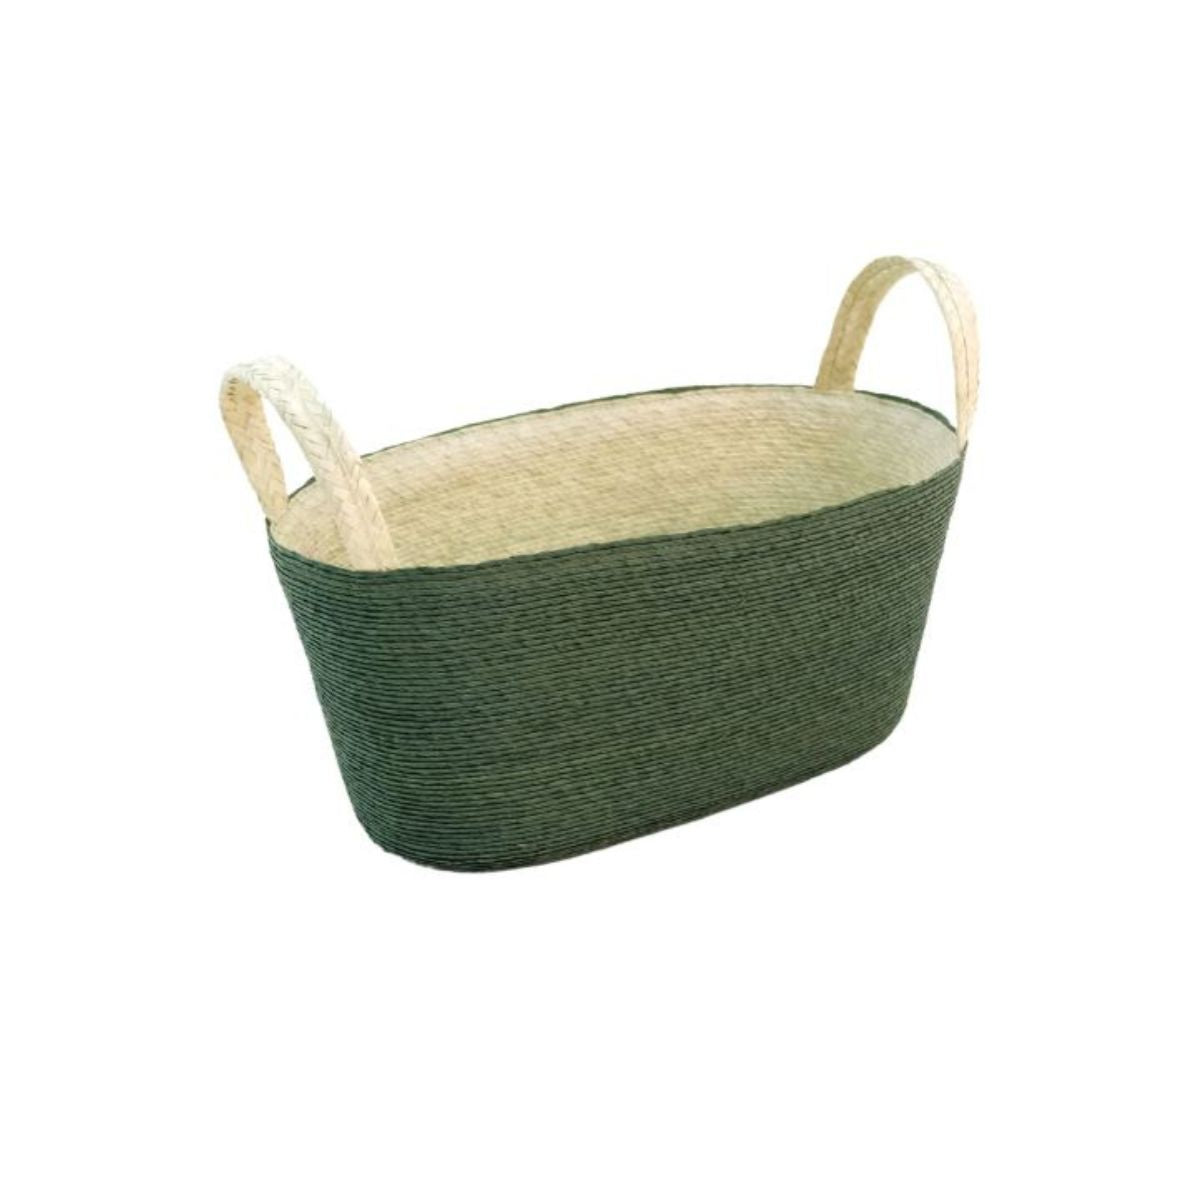 Handmade Oval Floor Basket with Handles in Cactus Green